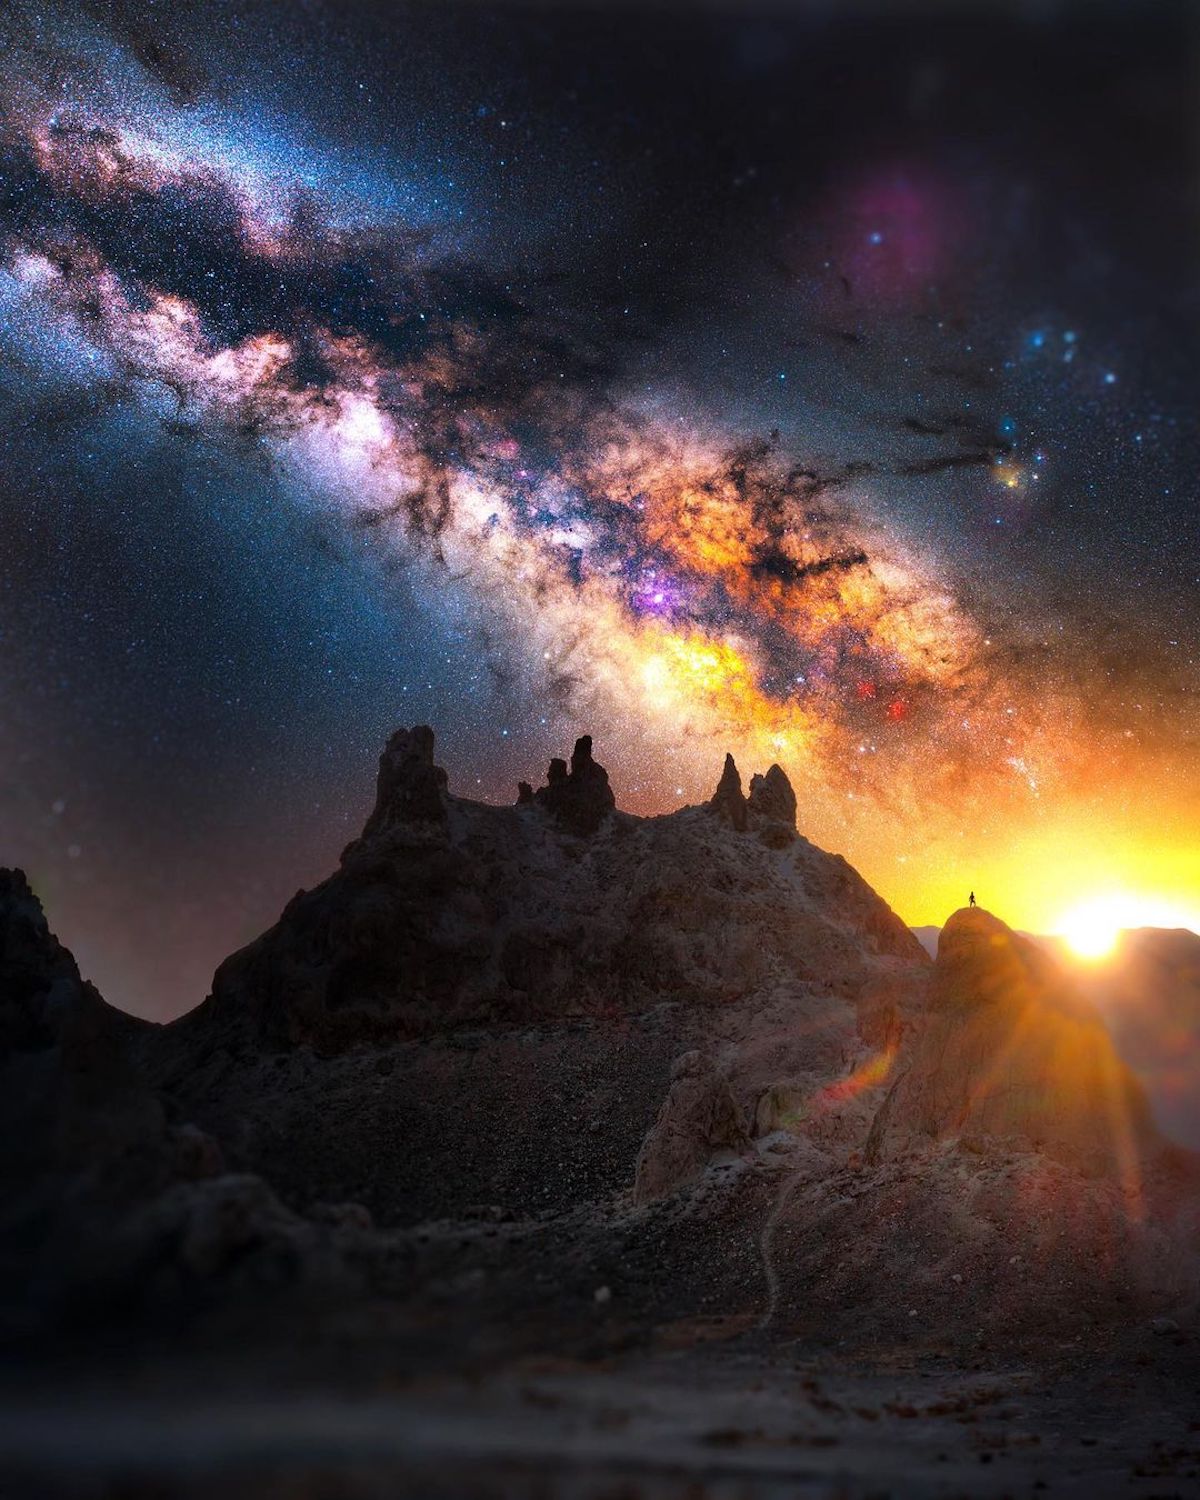 Milky Way Photo by Derek Culver